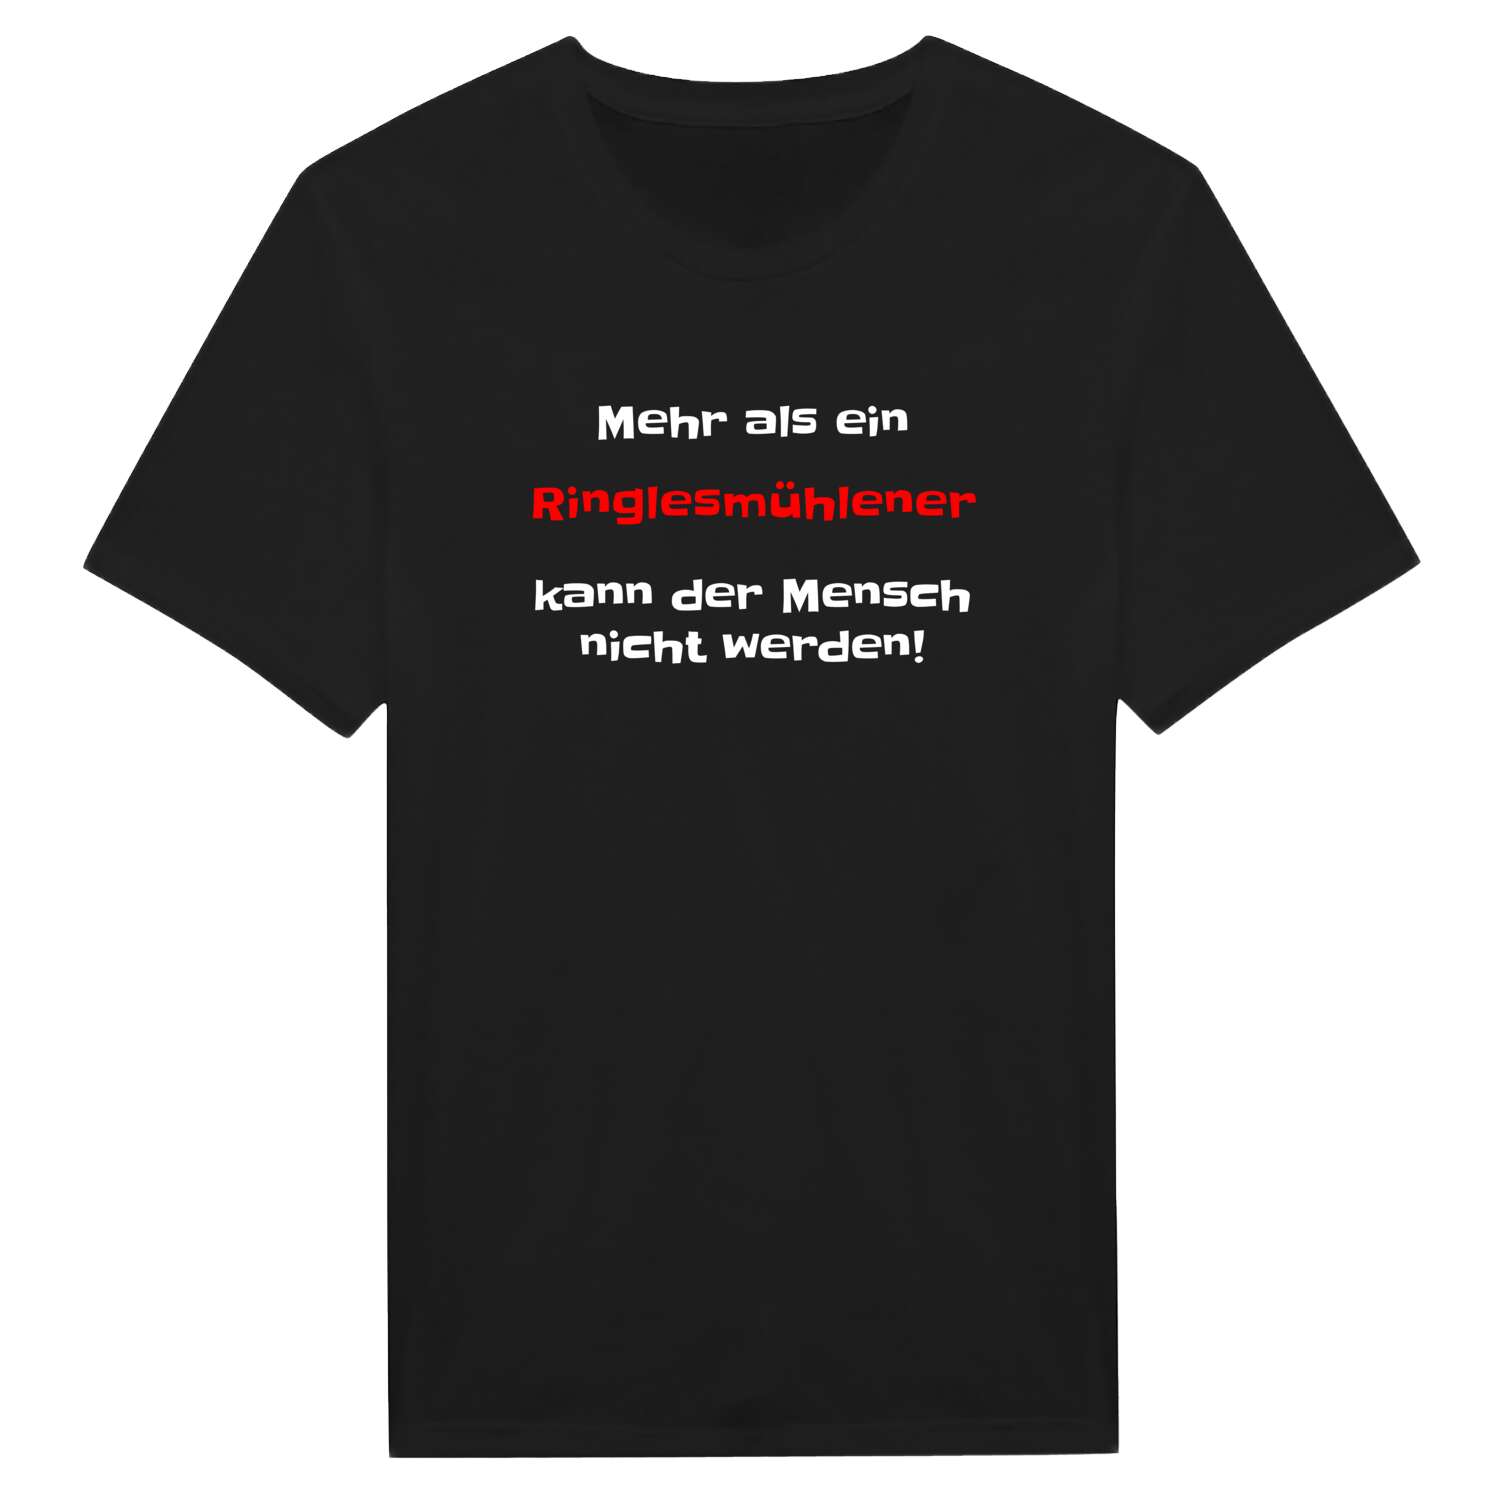 Ringlesmühle T-Shirt »Mehr als ein«